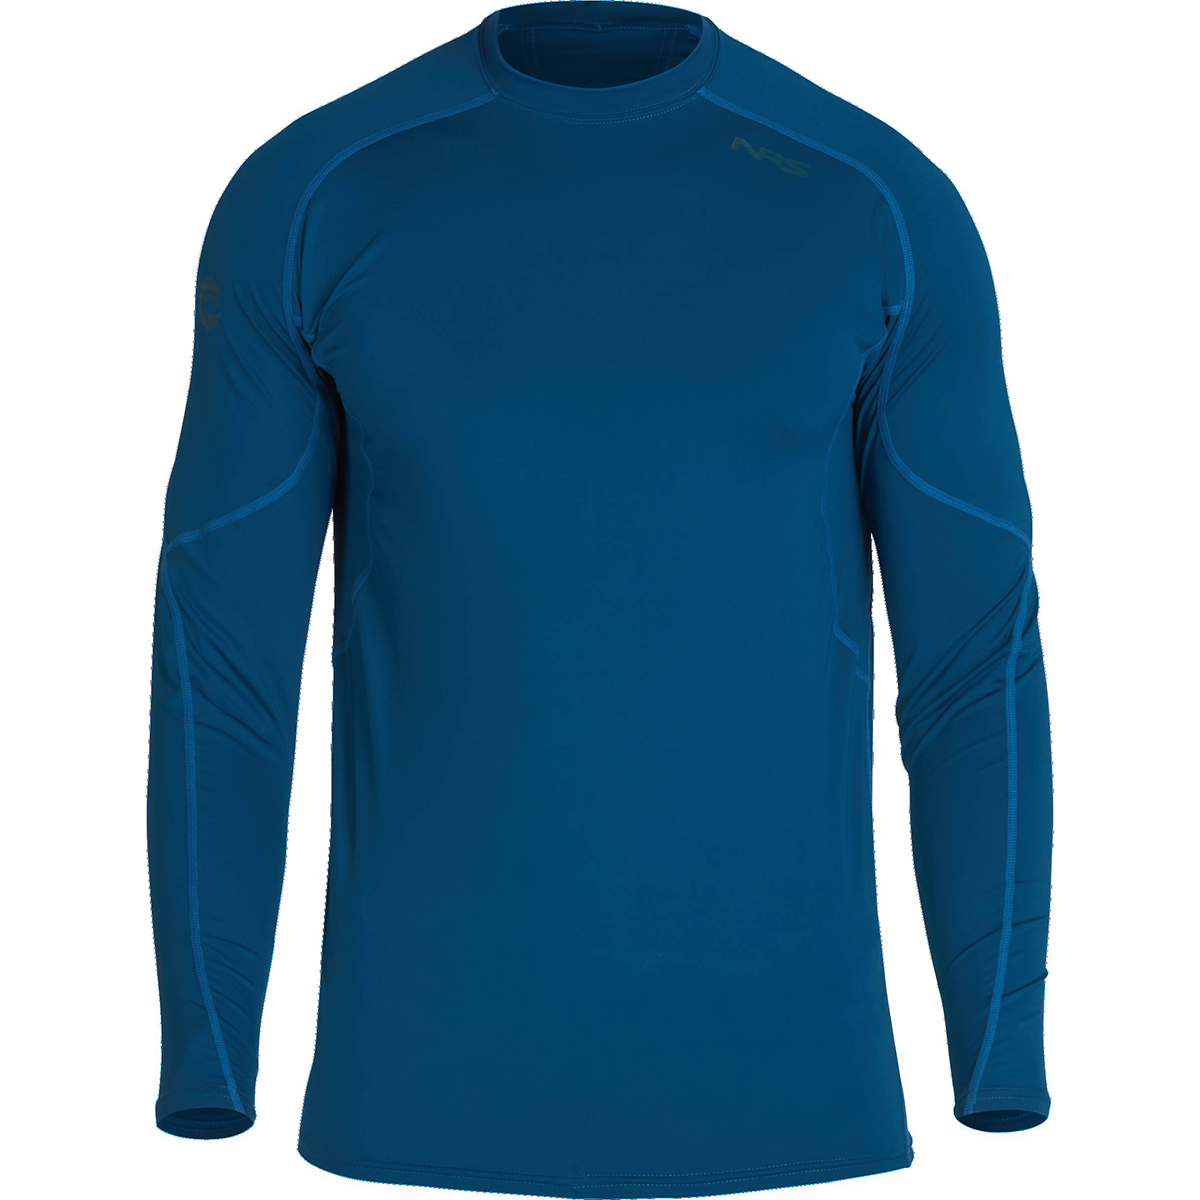 NRS Men's Rashguard Long-Sleeve Shirt - Size XL